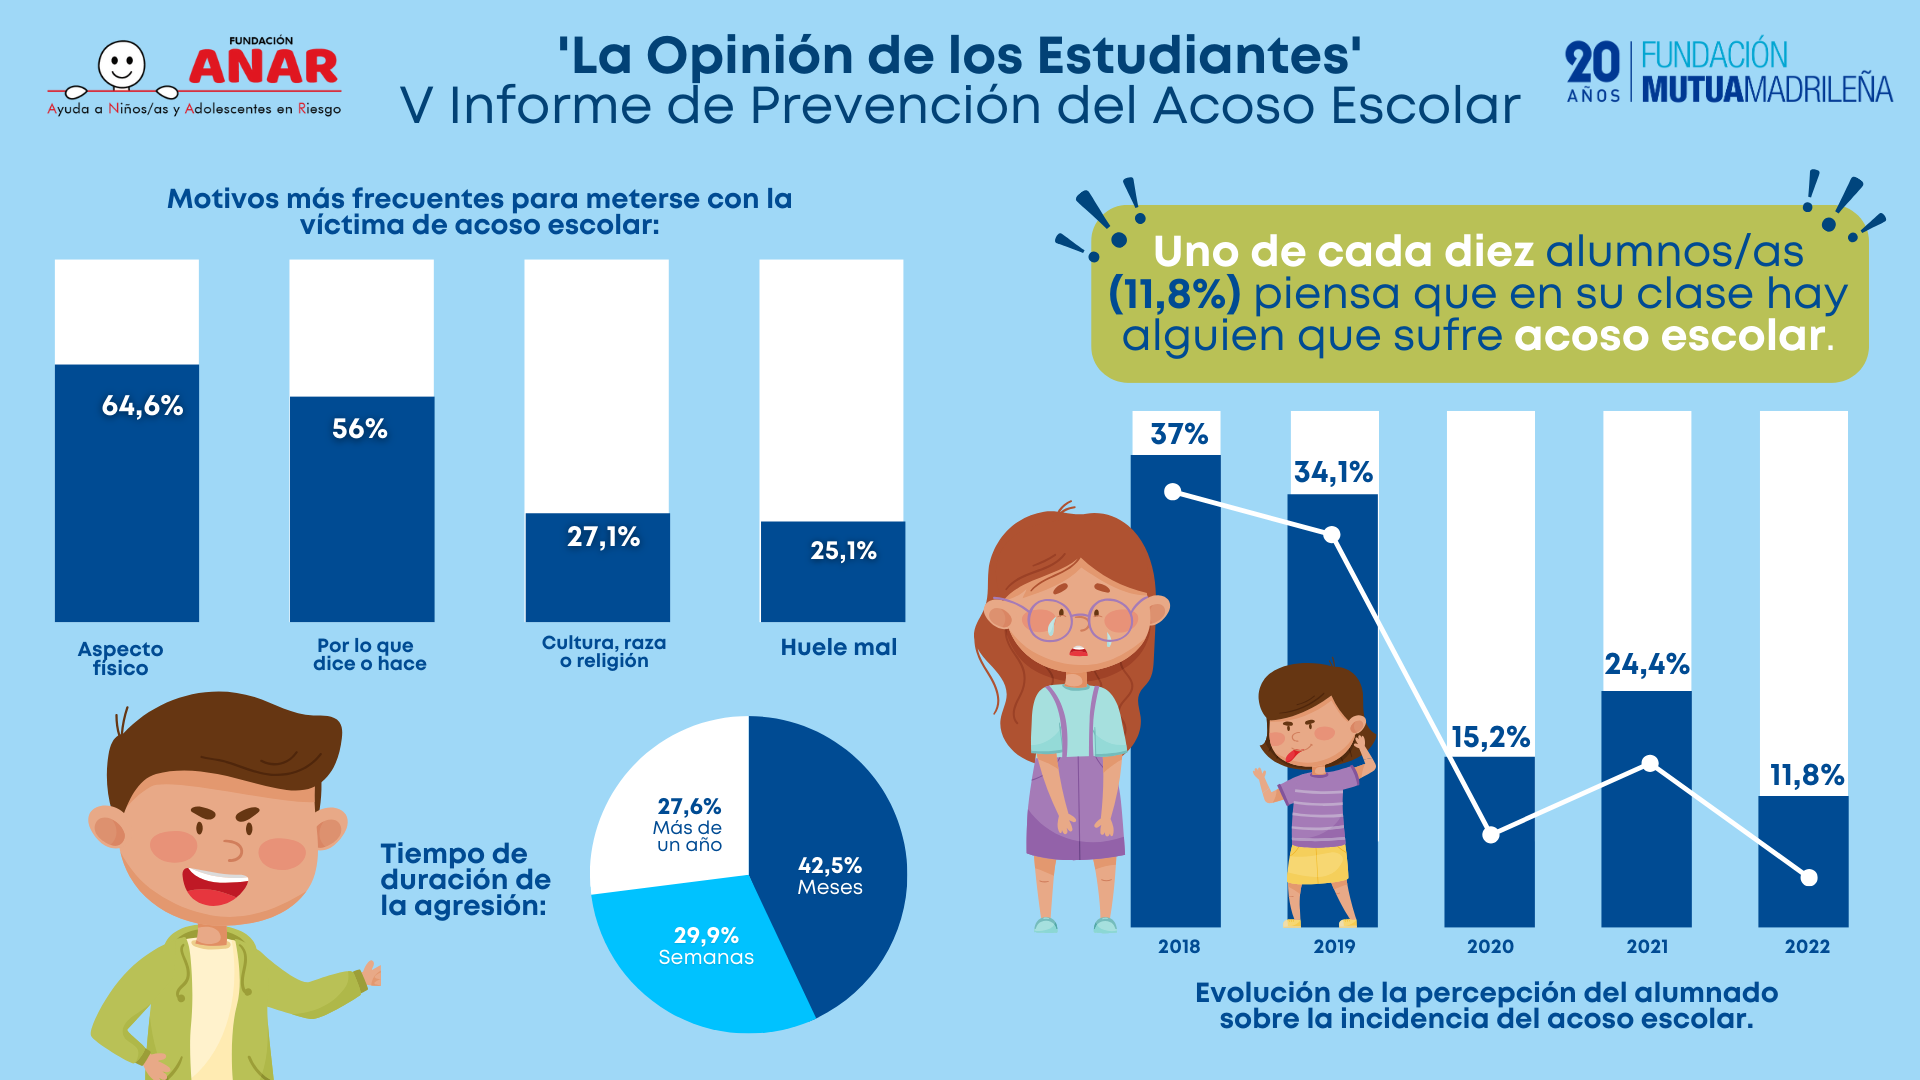 ANAR y Mutua Madrileña presentan el V Informe ‘La opinión de los estudiantes’ sobre acoso escolar